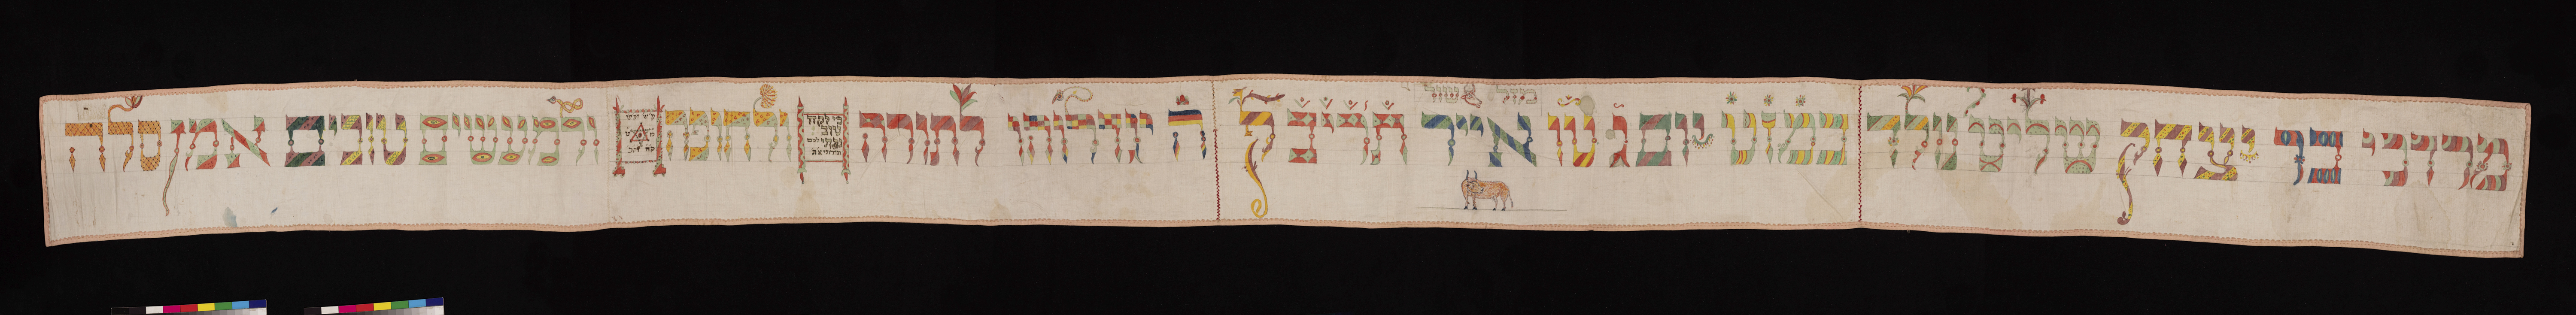 1975.054 Torah binder of Mordecai son of Isaac Shalit